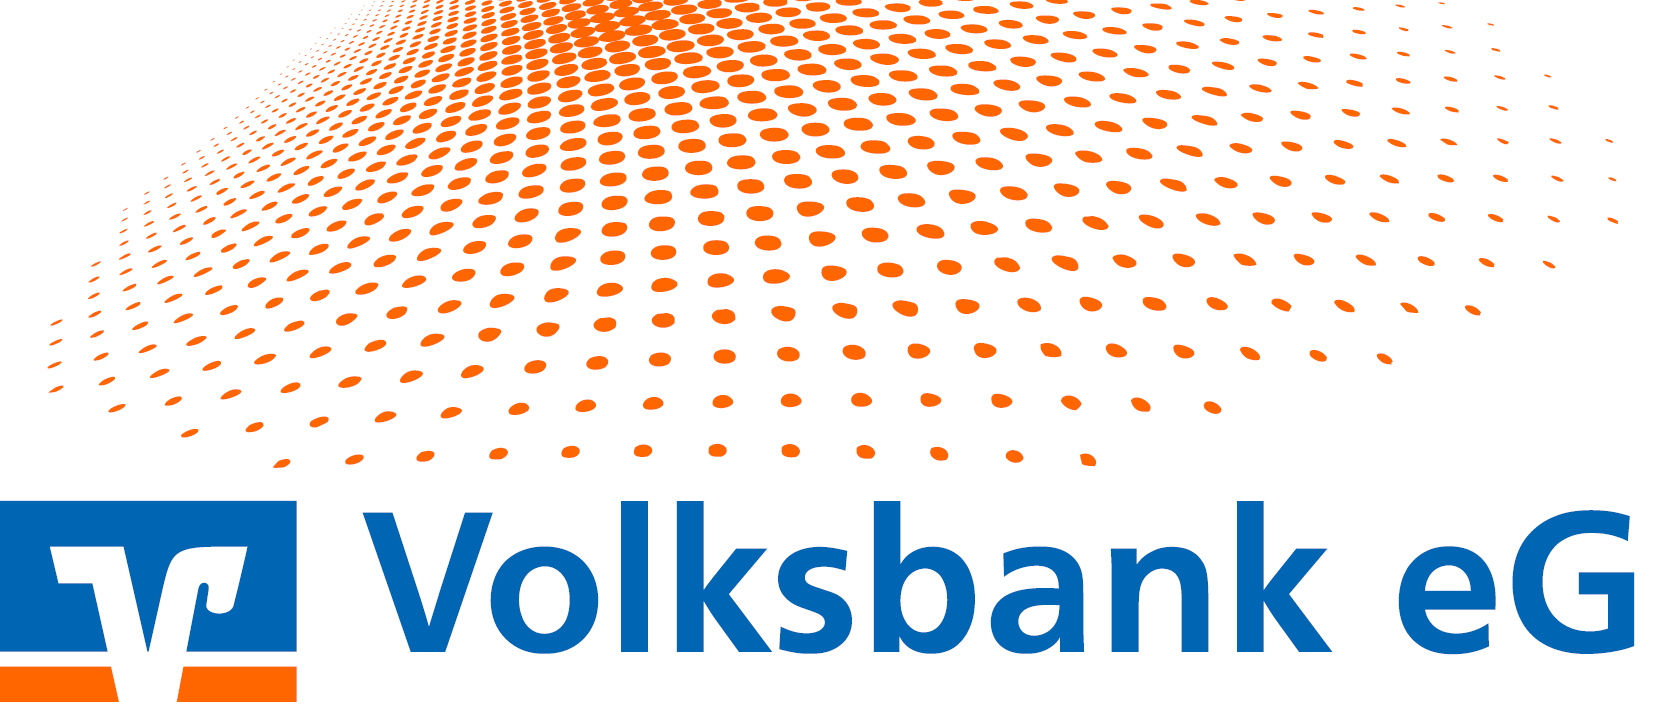 Volksbank eG Warendorf